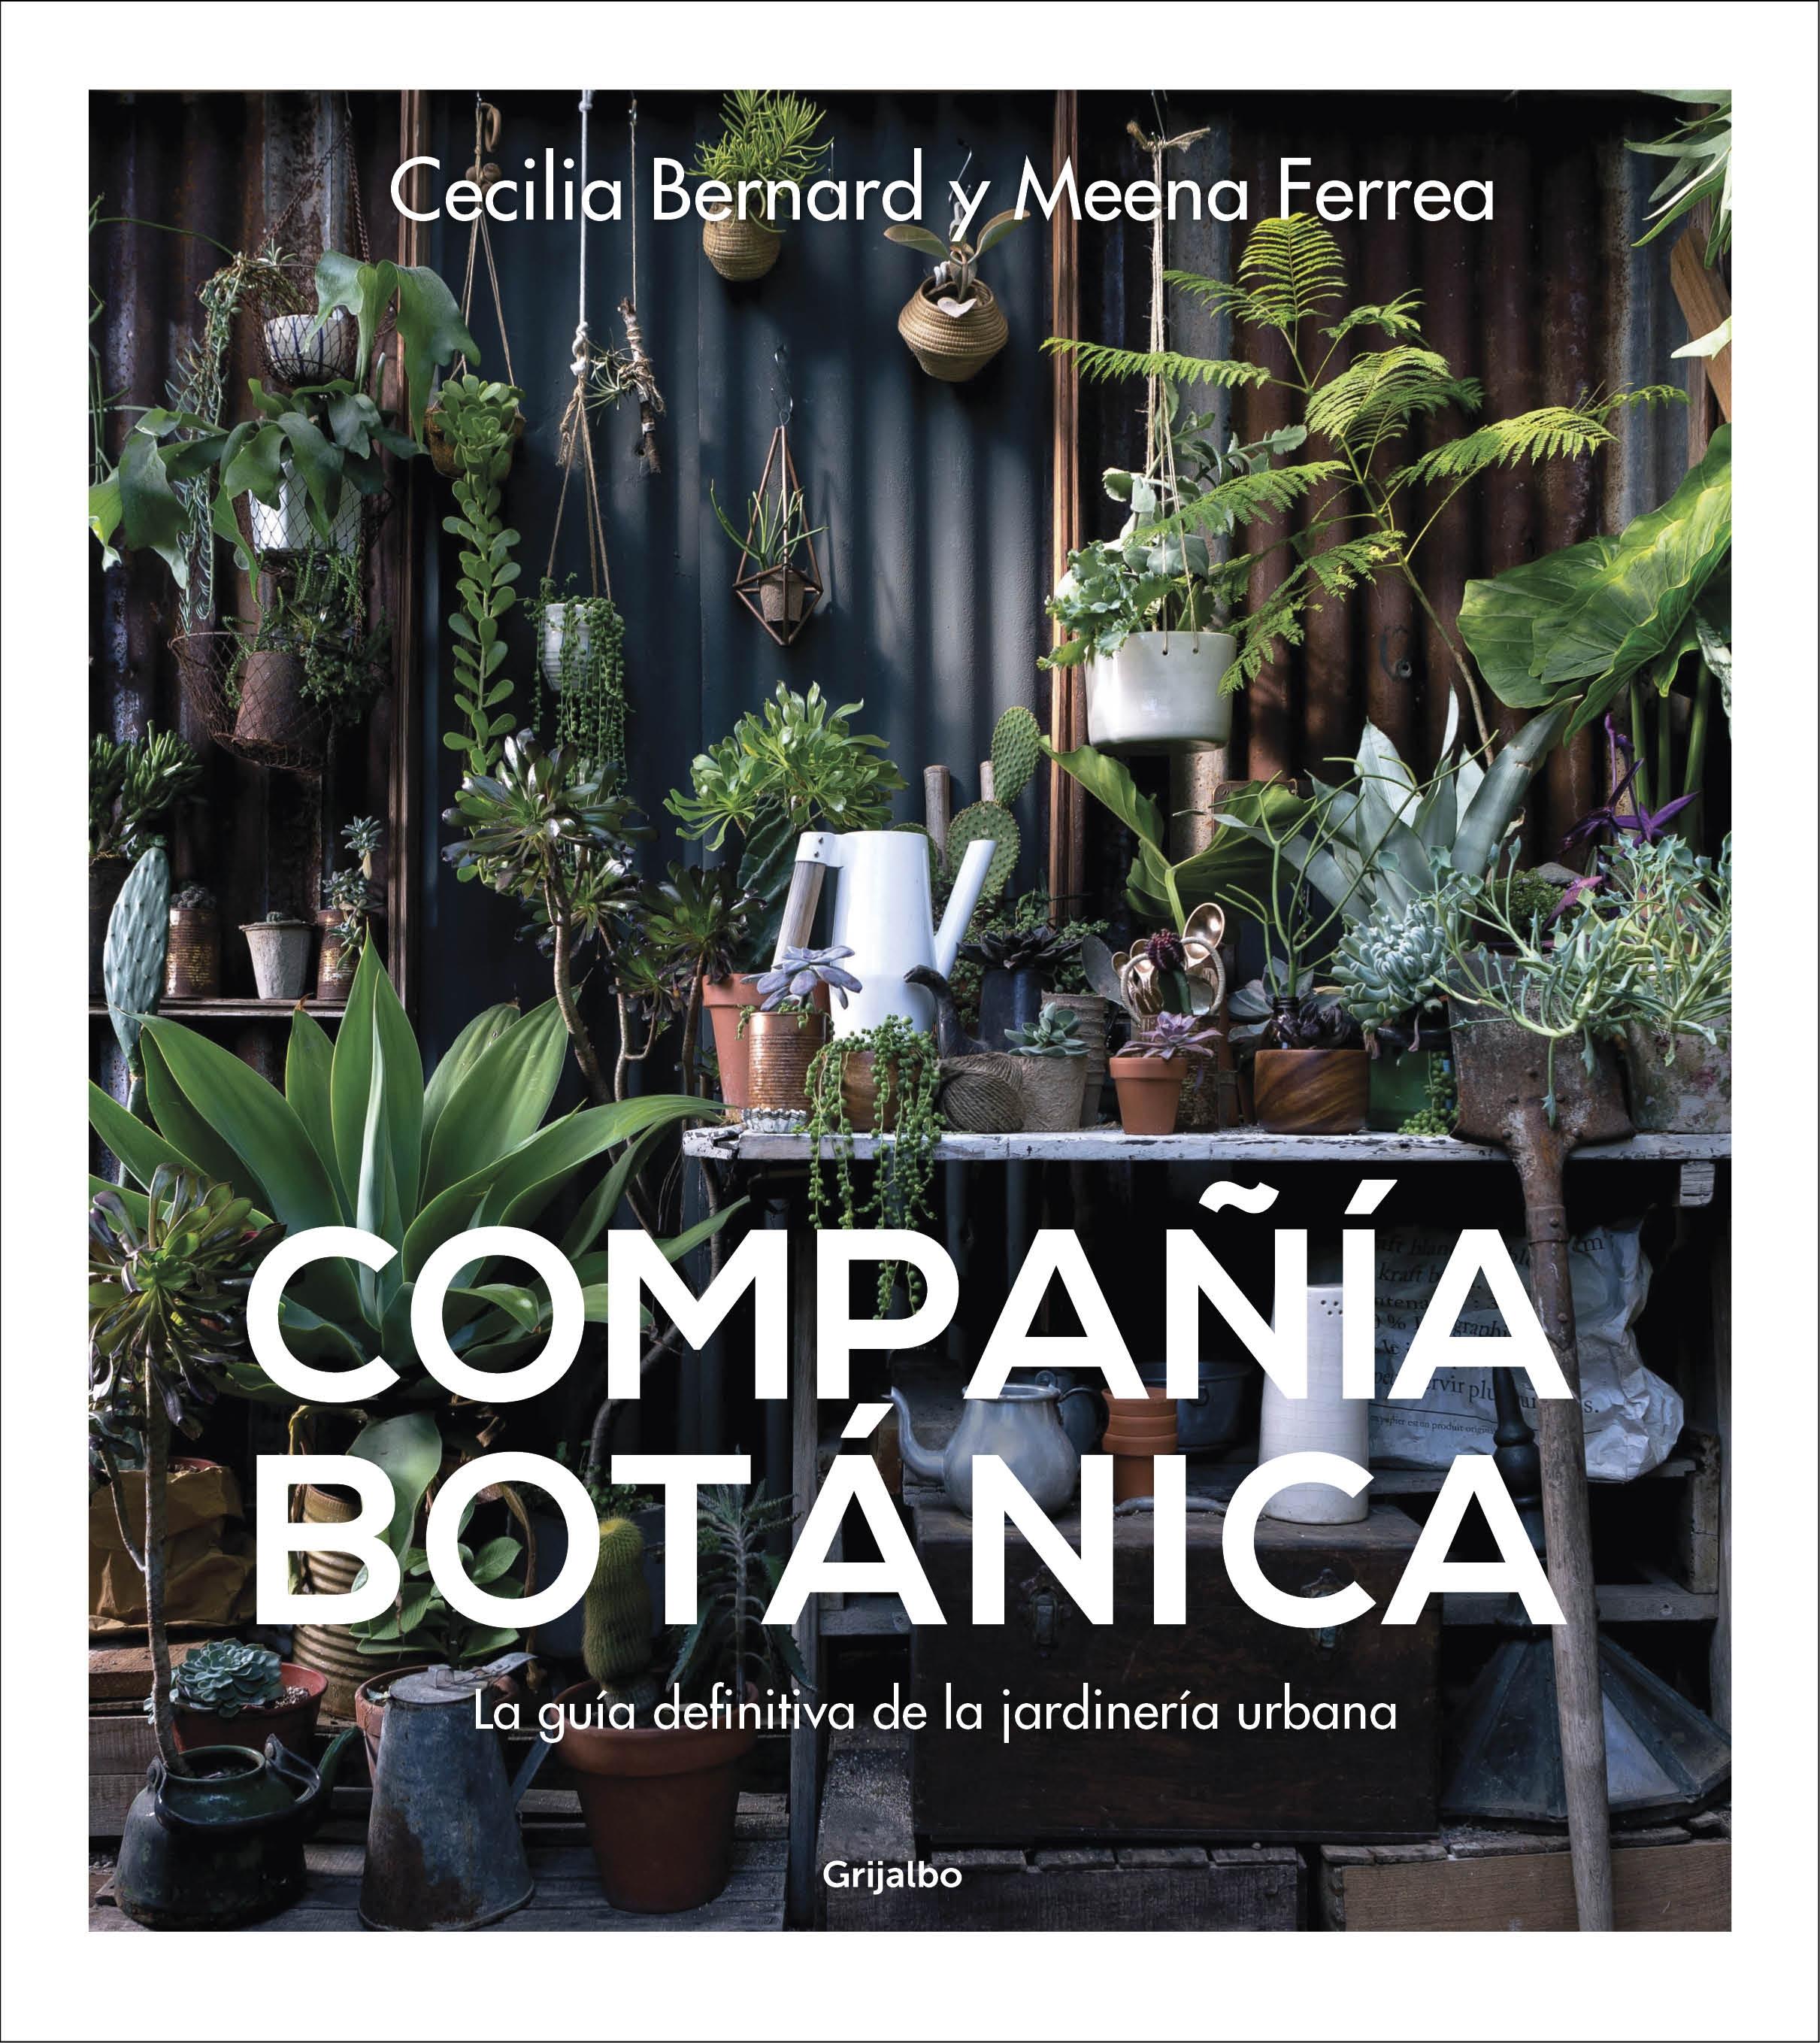 Compañía botánica "La guía definitiva de la jardinería urbana". 